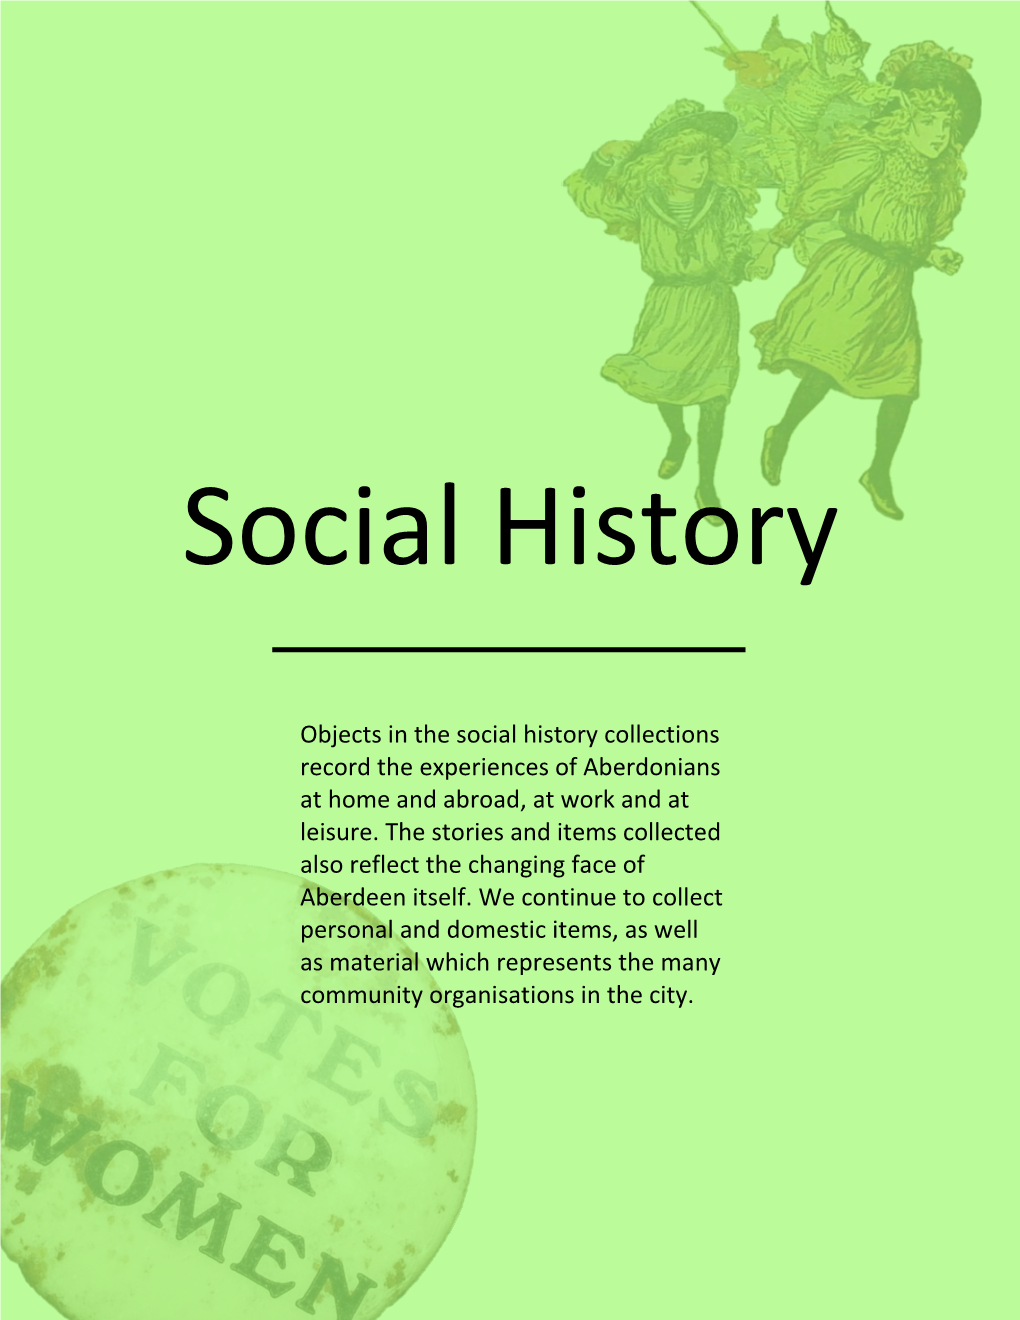 Social History Highlights